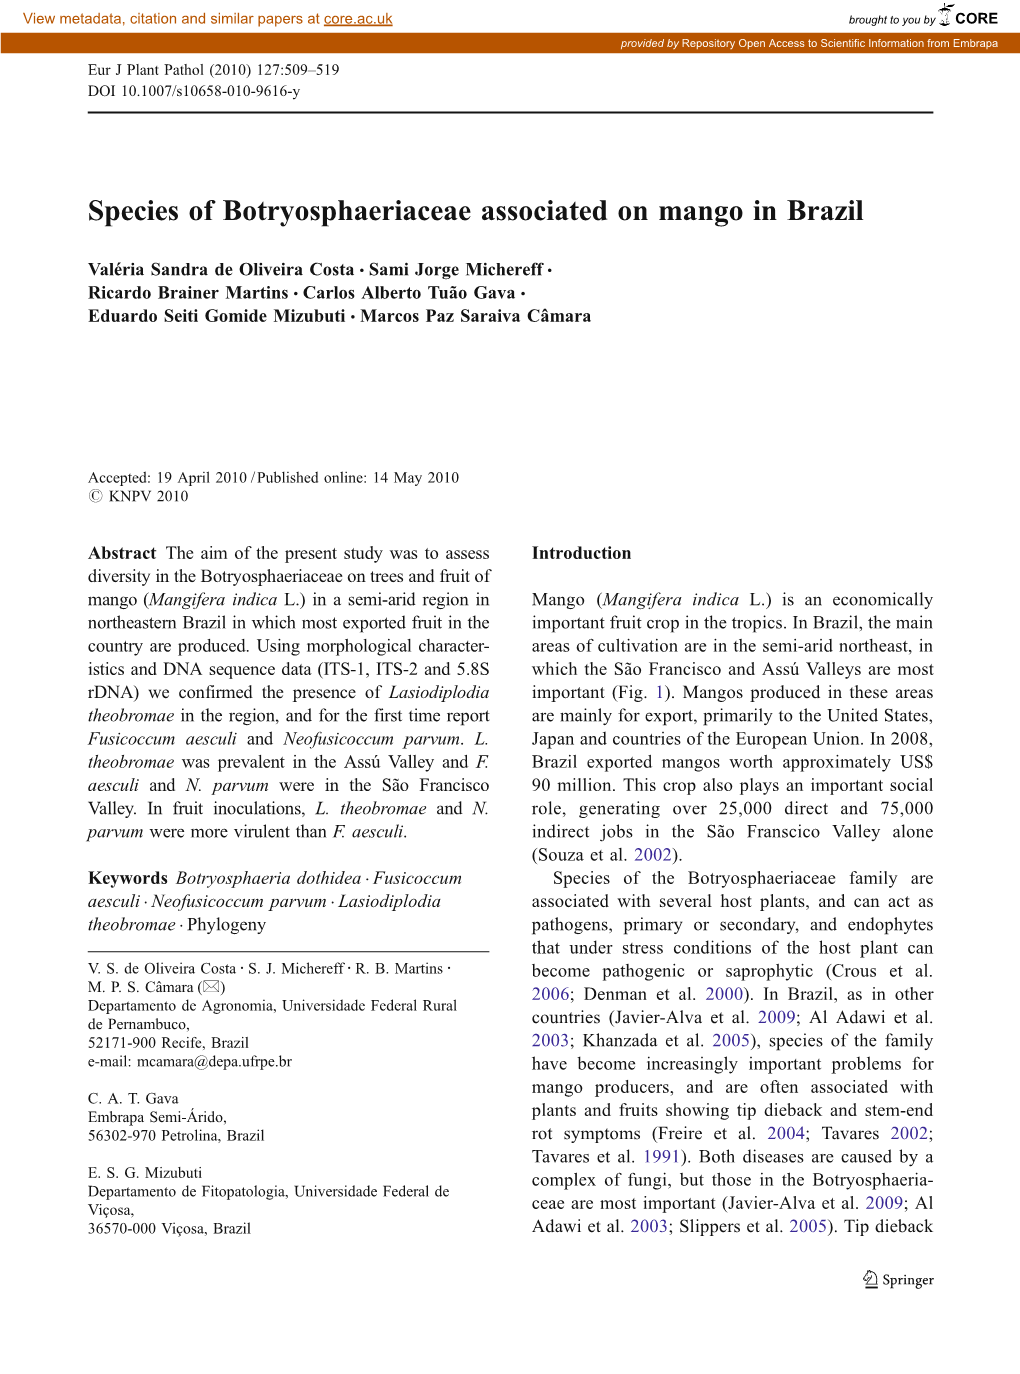 Species of Botryosphaeriaceae Associated on Mango in Brazil